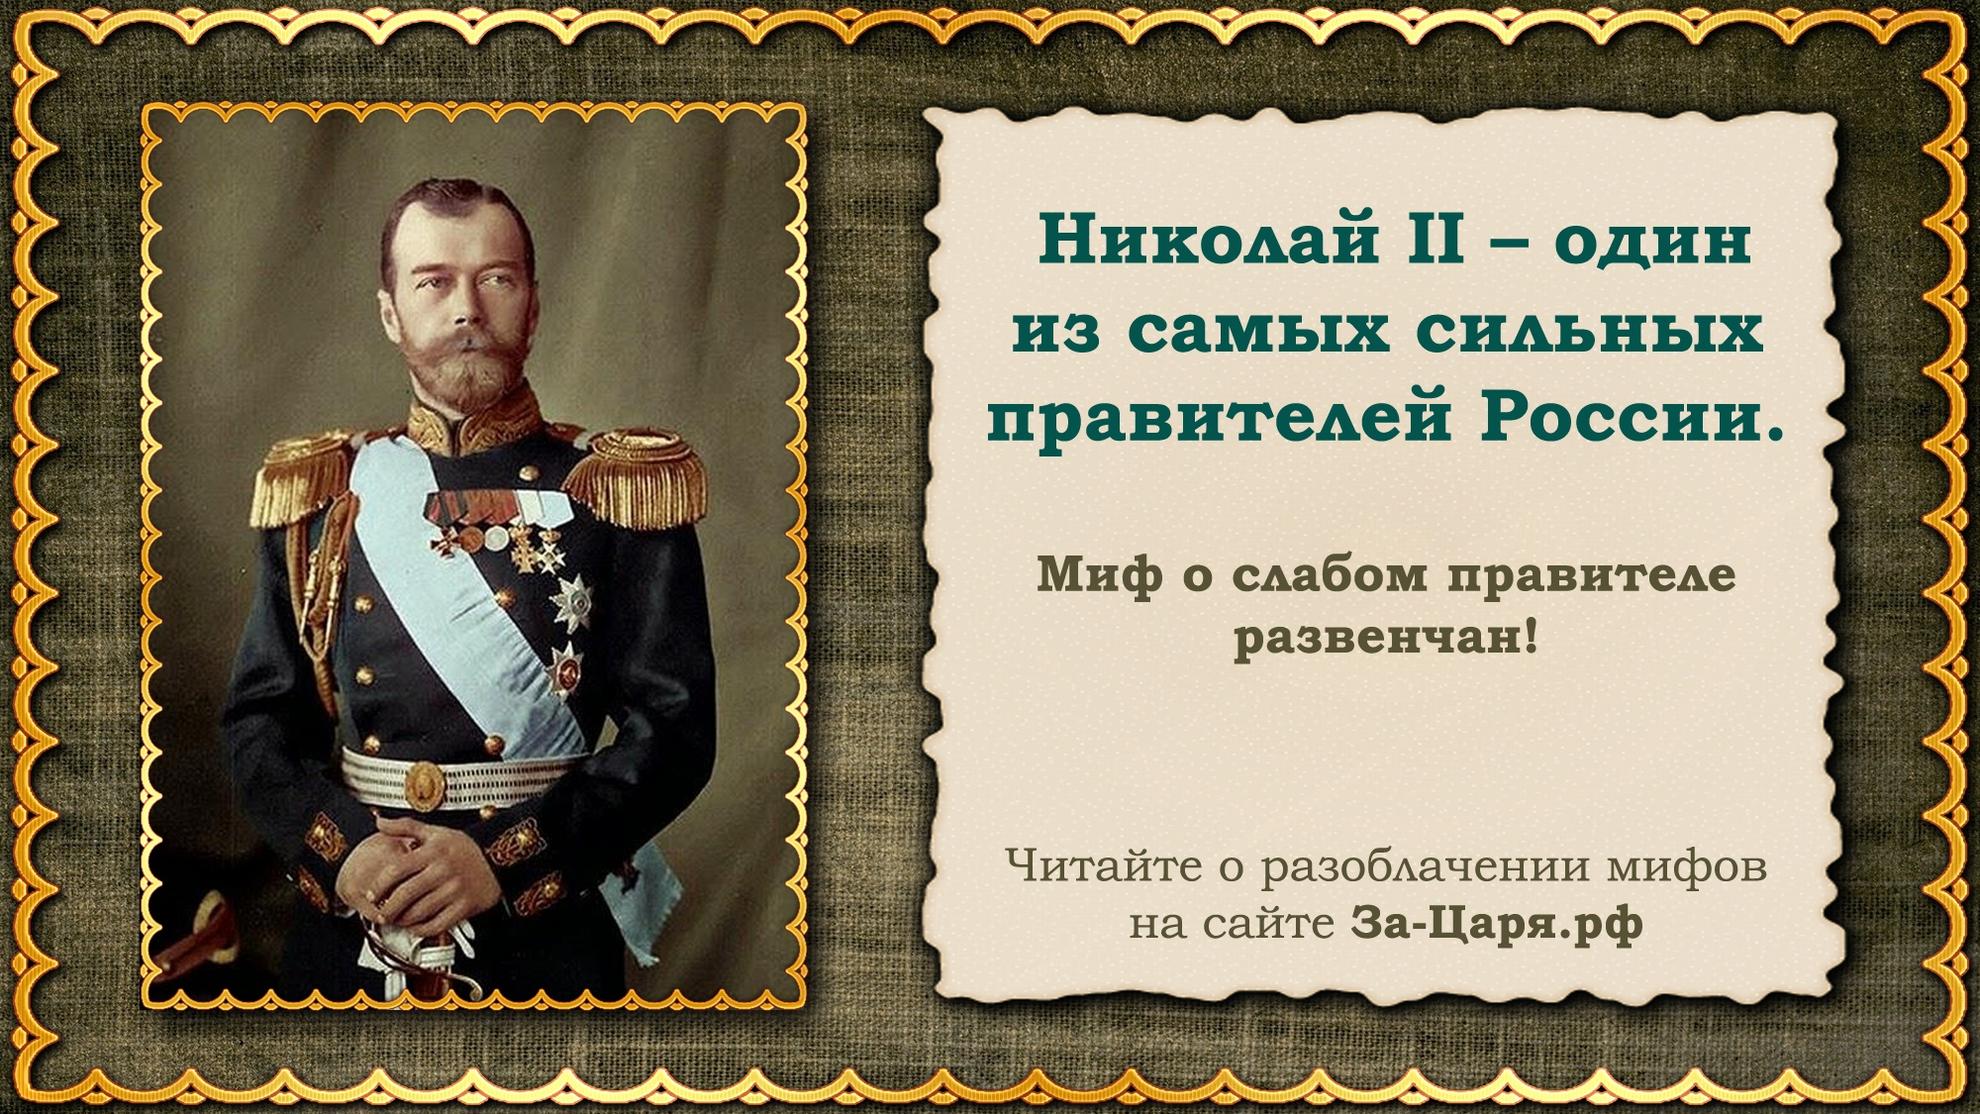 Сильные правители россии. Интересные факты о Николае II.